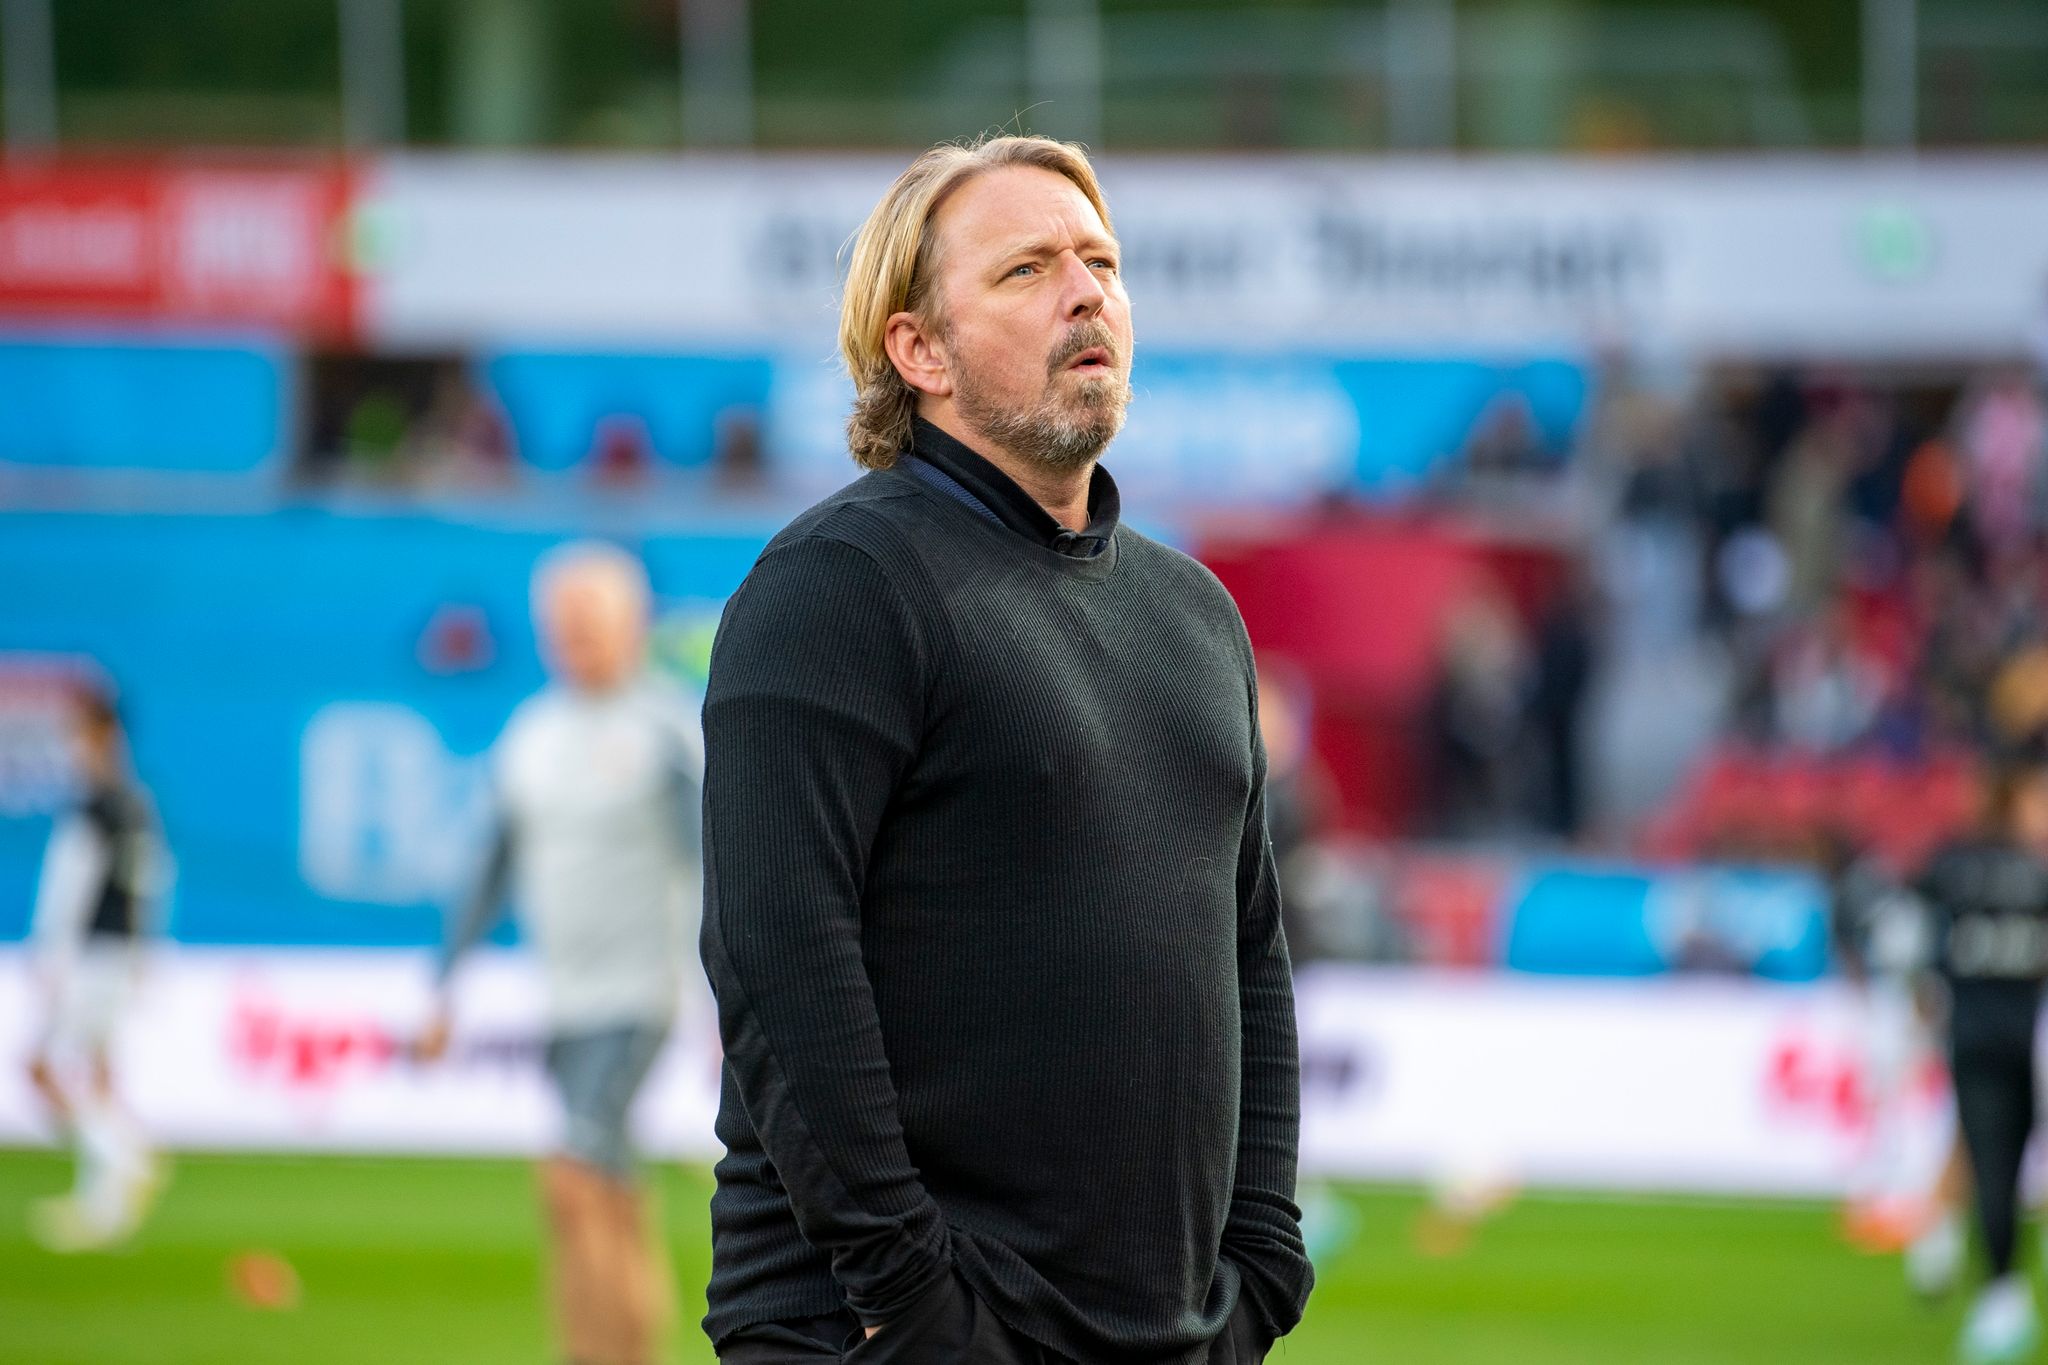 Mislintat verlässt VfB Stuttgart – Labbadia neuer Coach?